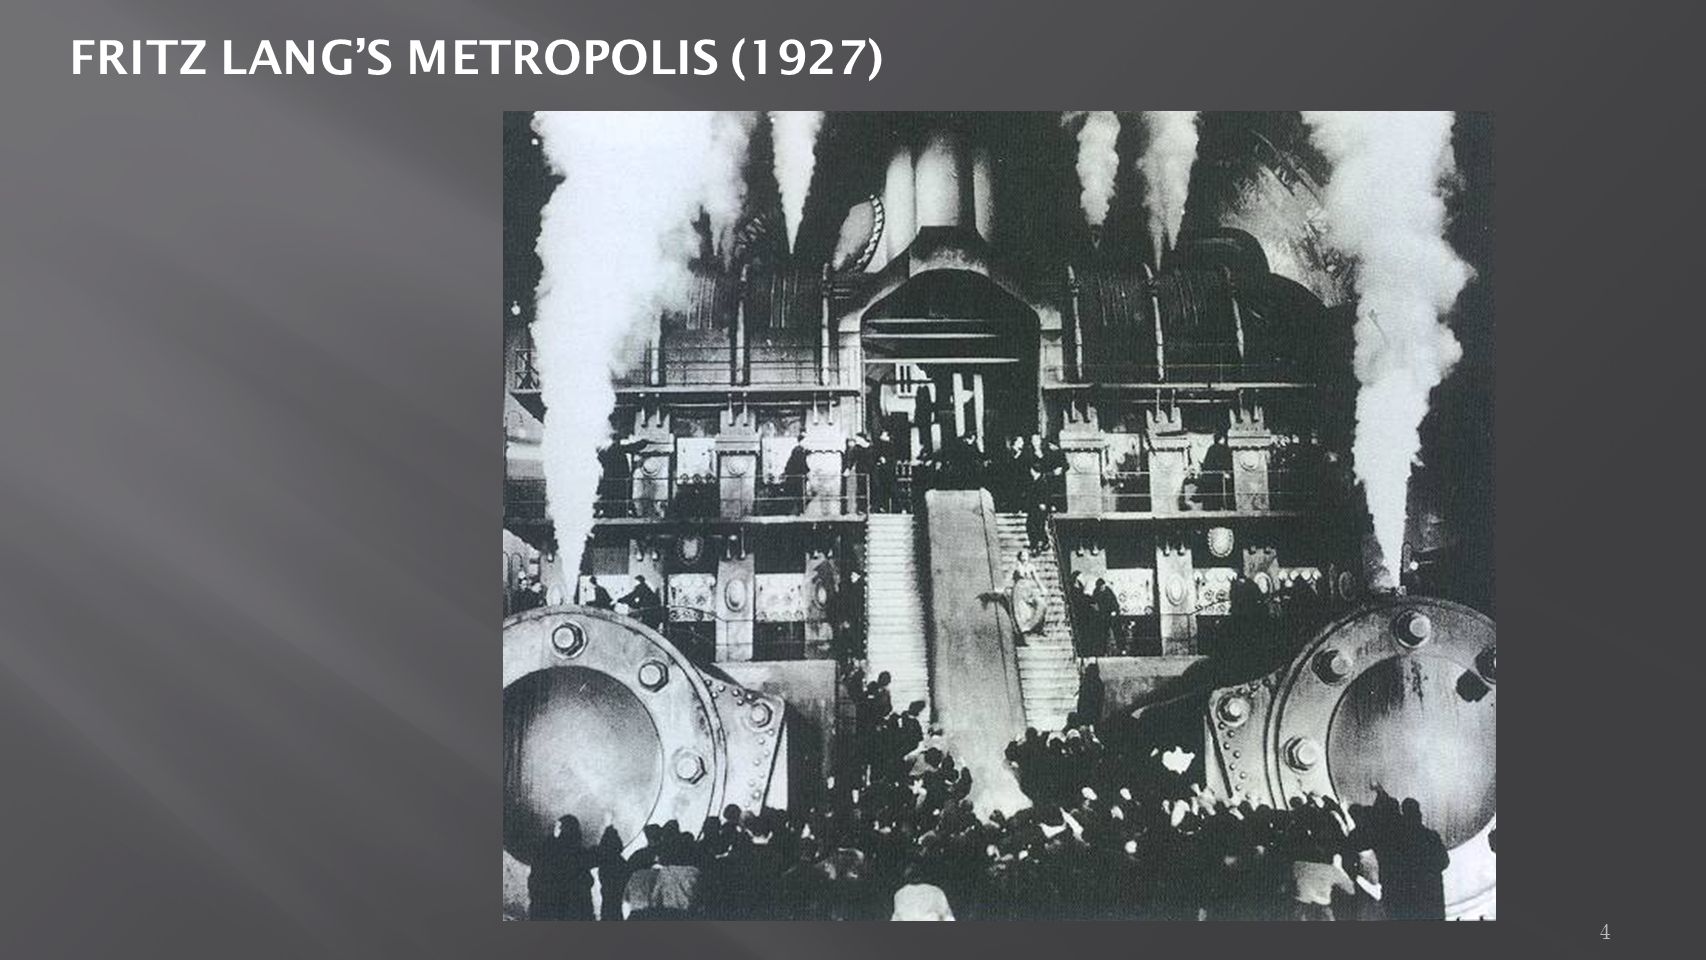 4 FRITZ LANG’S METROPOLIS (1927)